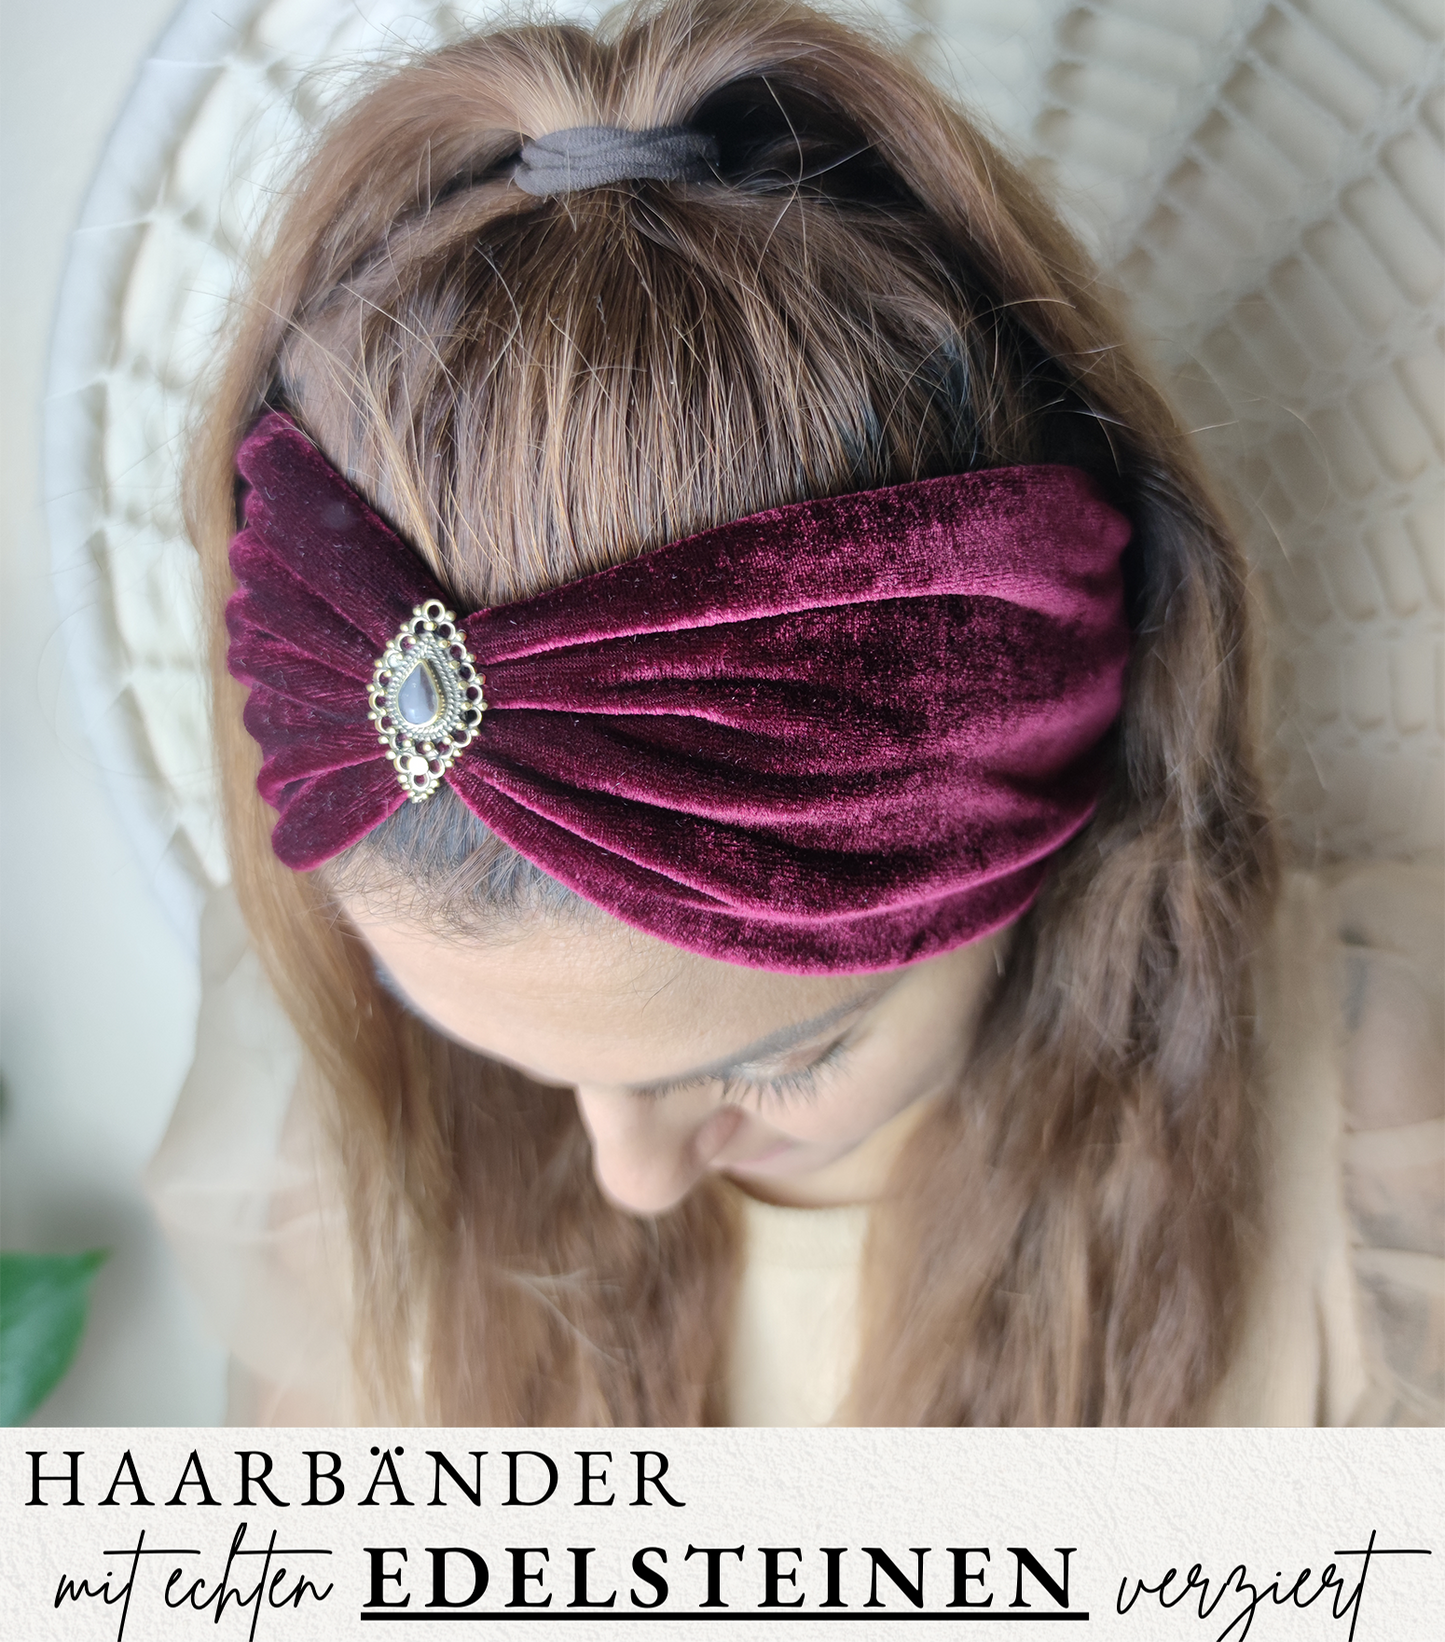 Serayi Haarband in dunkelrot aus Samt - mit Edelsteinen verziert